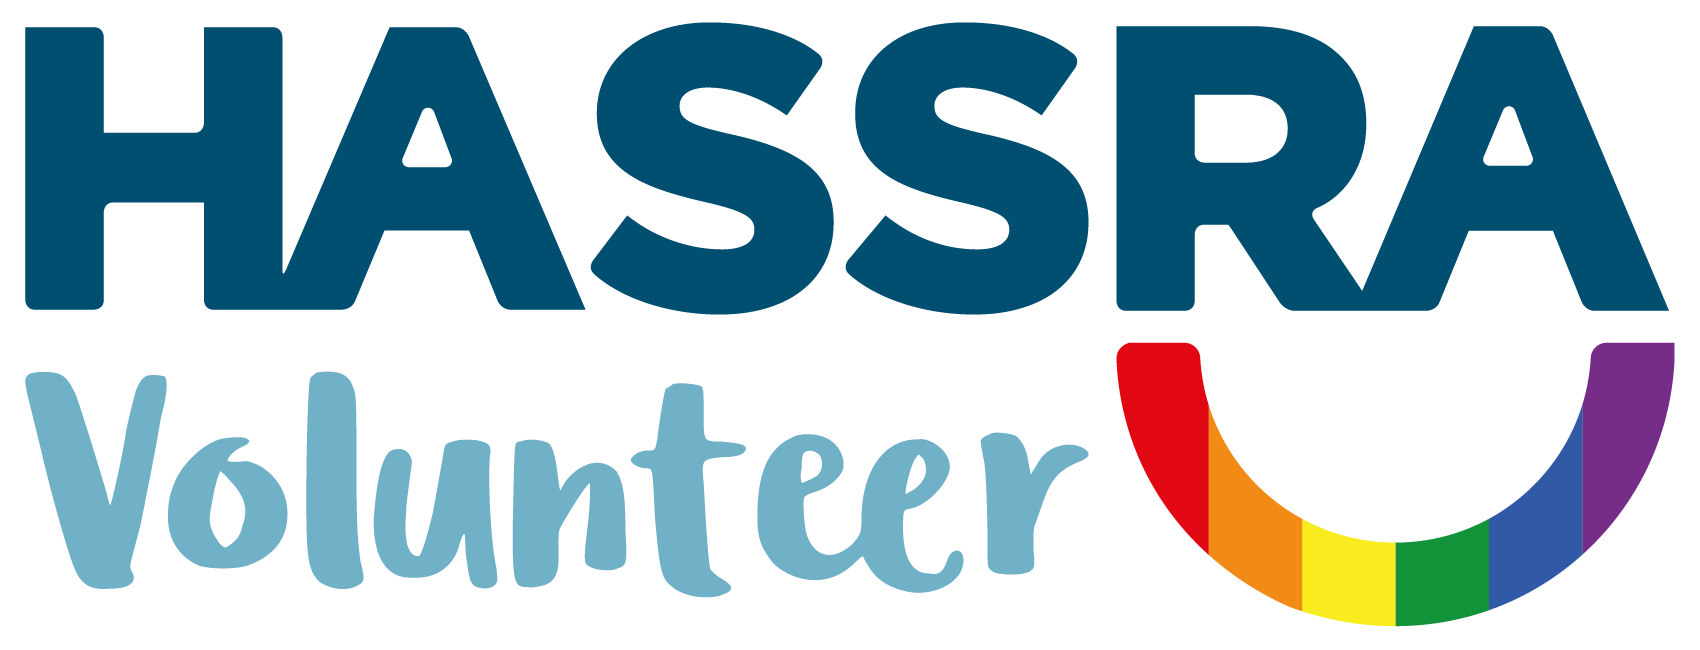 HASSRA_Volunteer